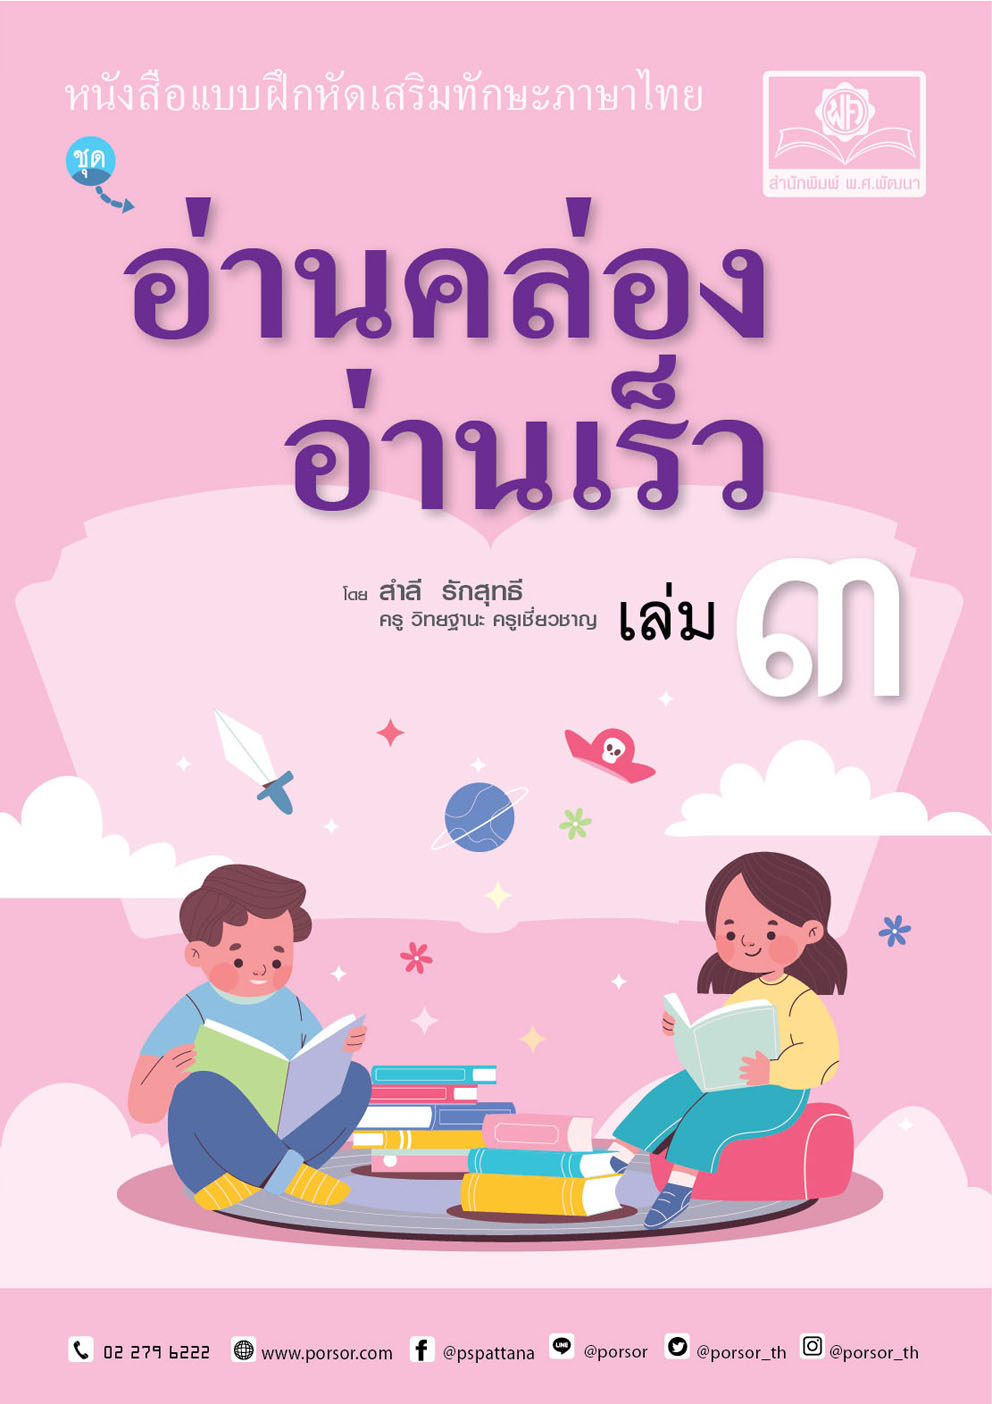 อ่านคล่อง อ่านเร็ว เล่ม 3 :หนังสือแบบฝึกหัดเสริมทักษะภาษาไทย